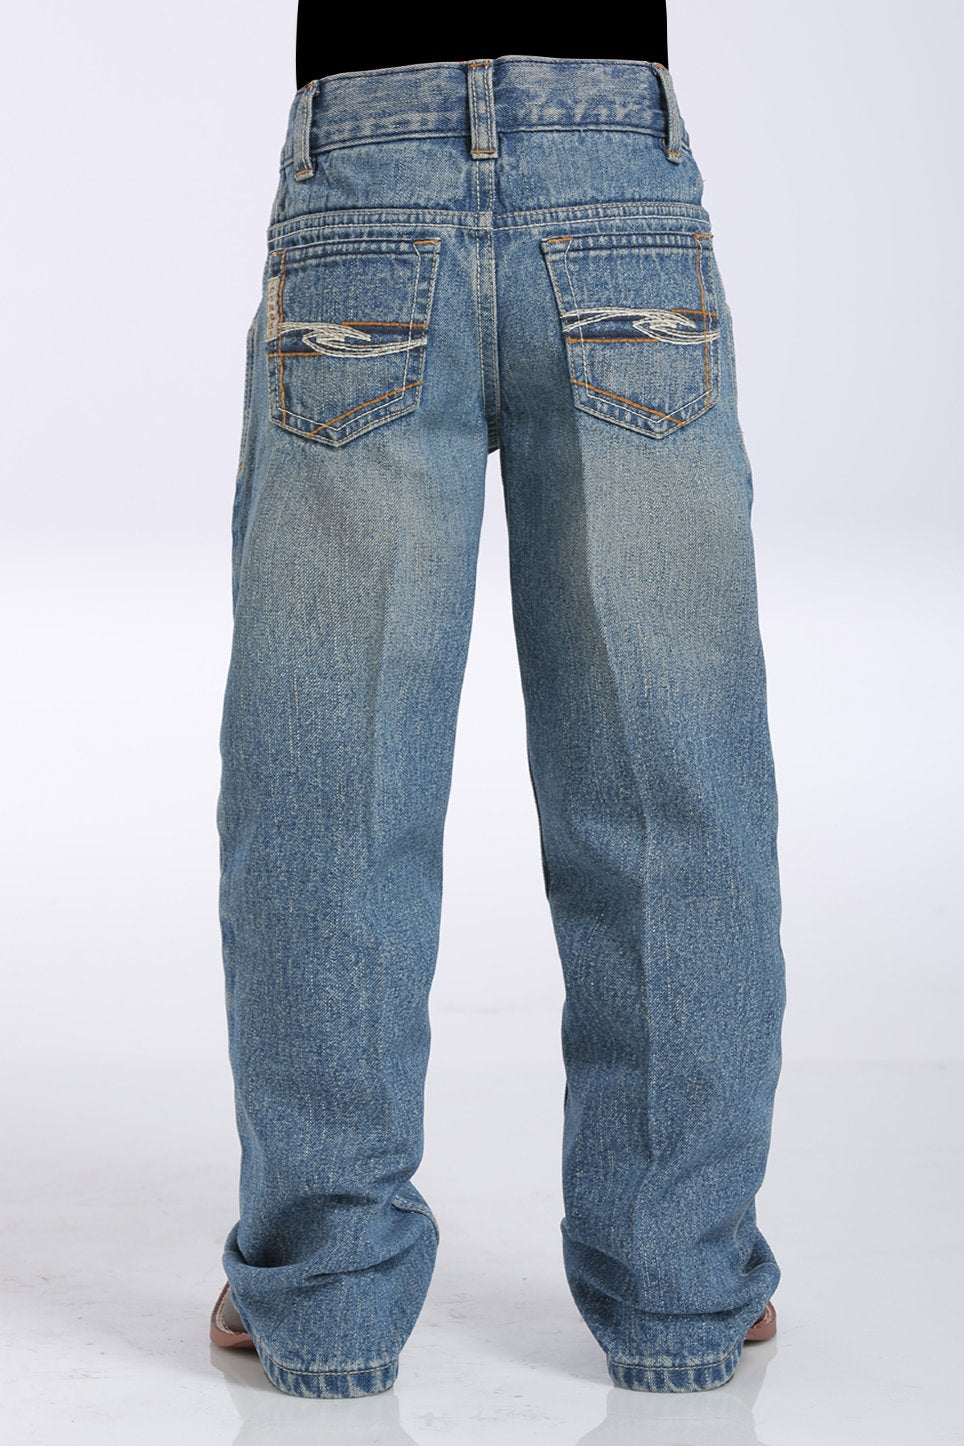 Cinch Boy's Tanner Medium Wash Jeans